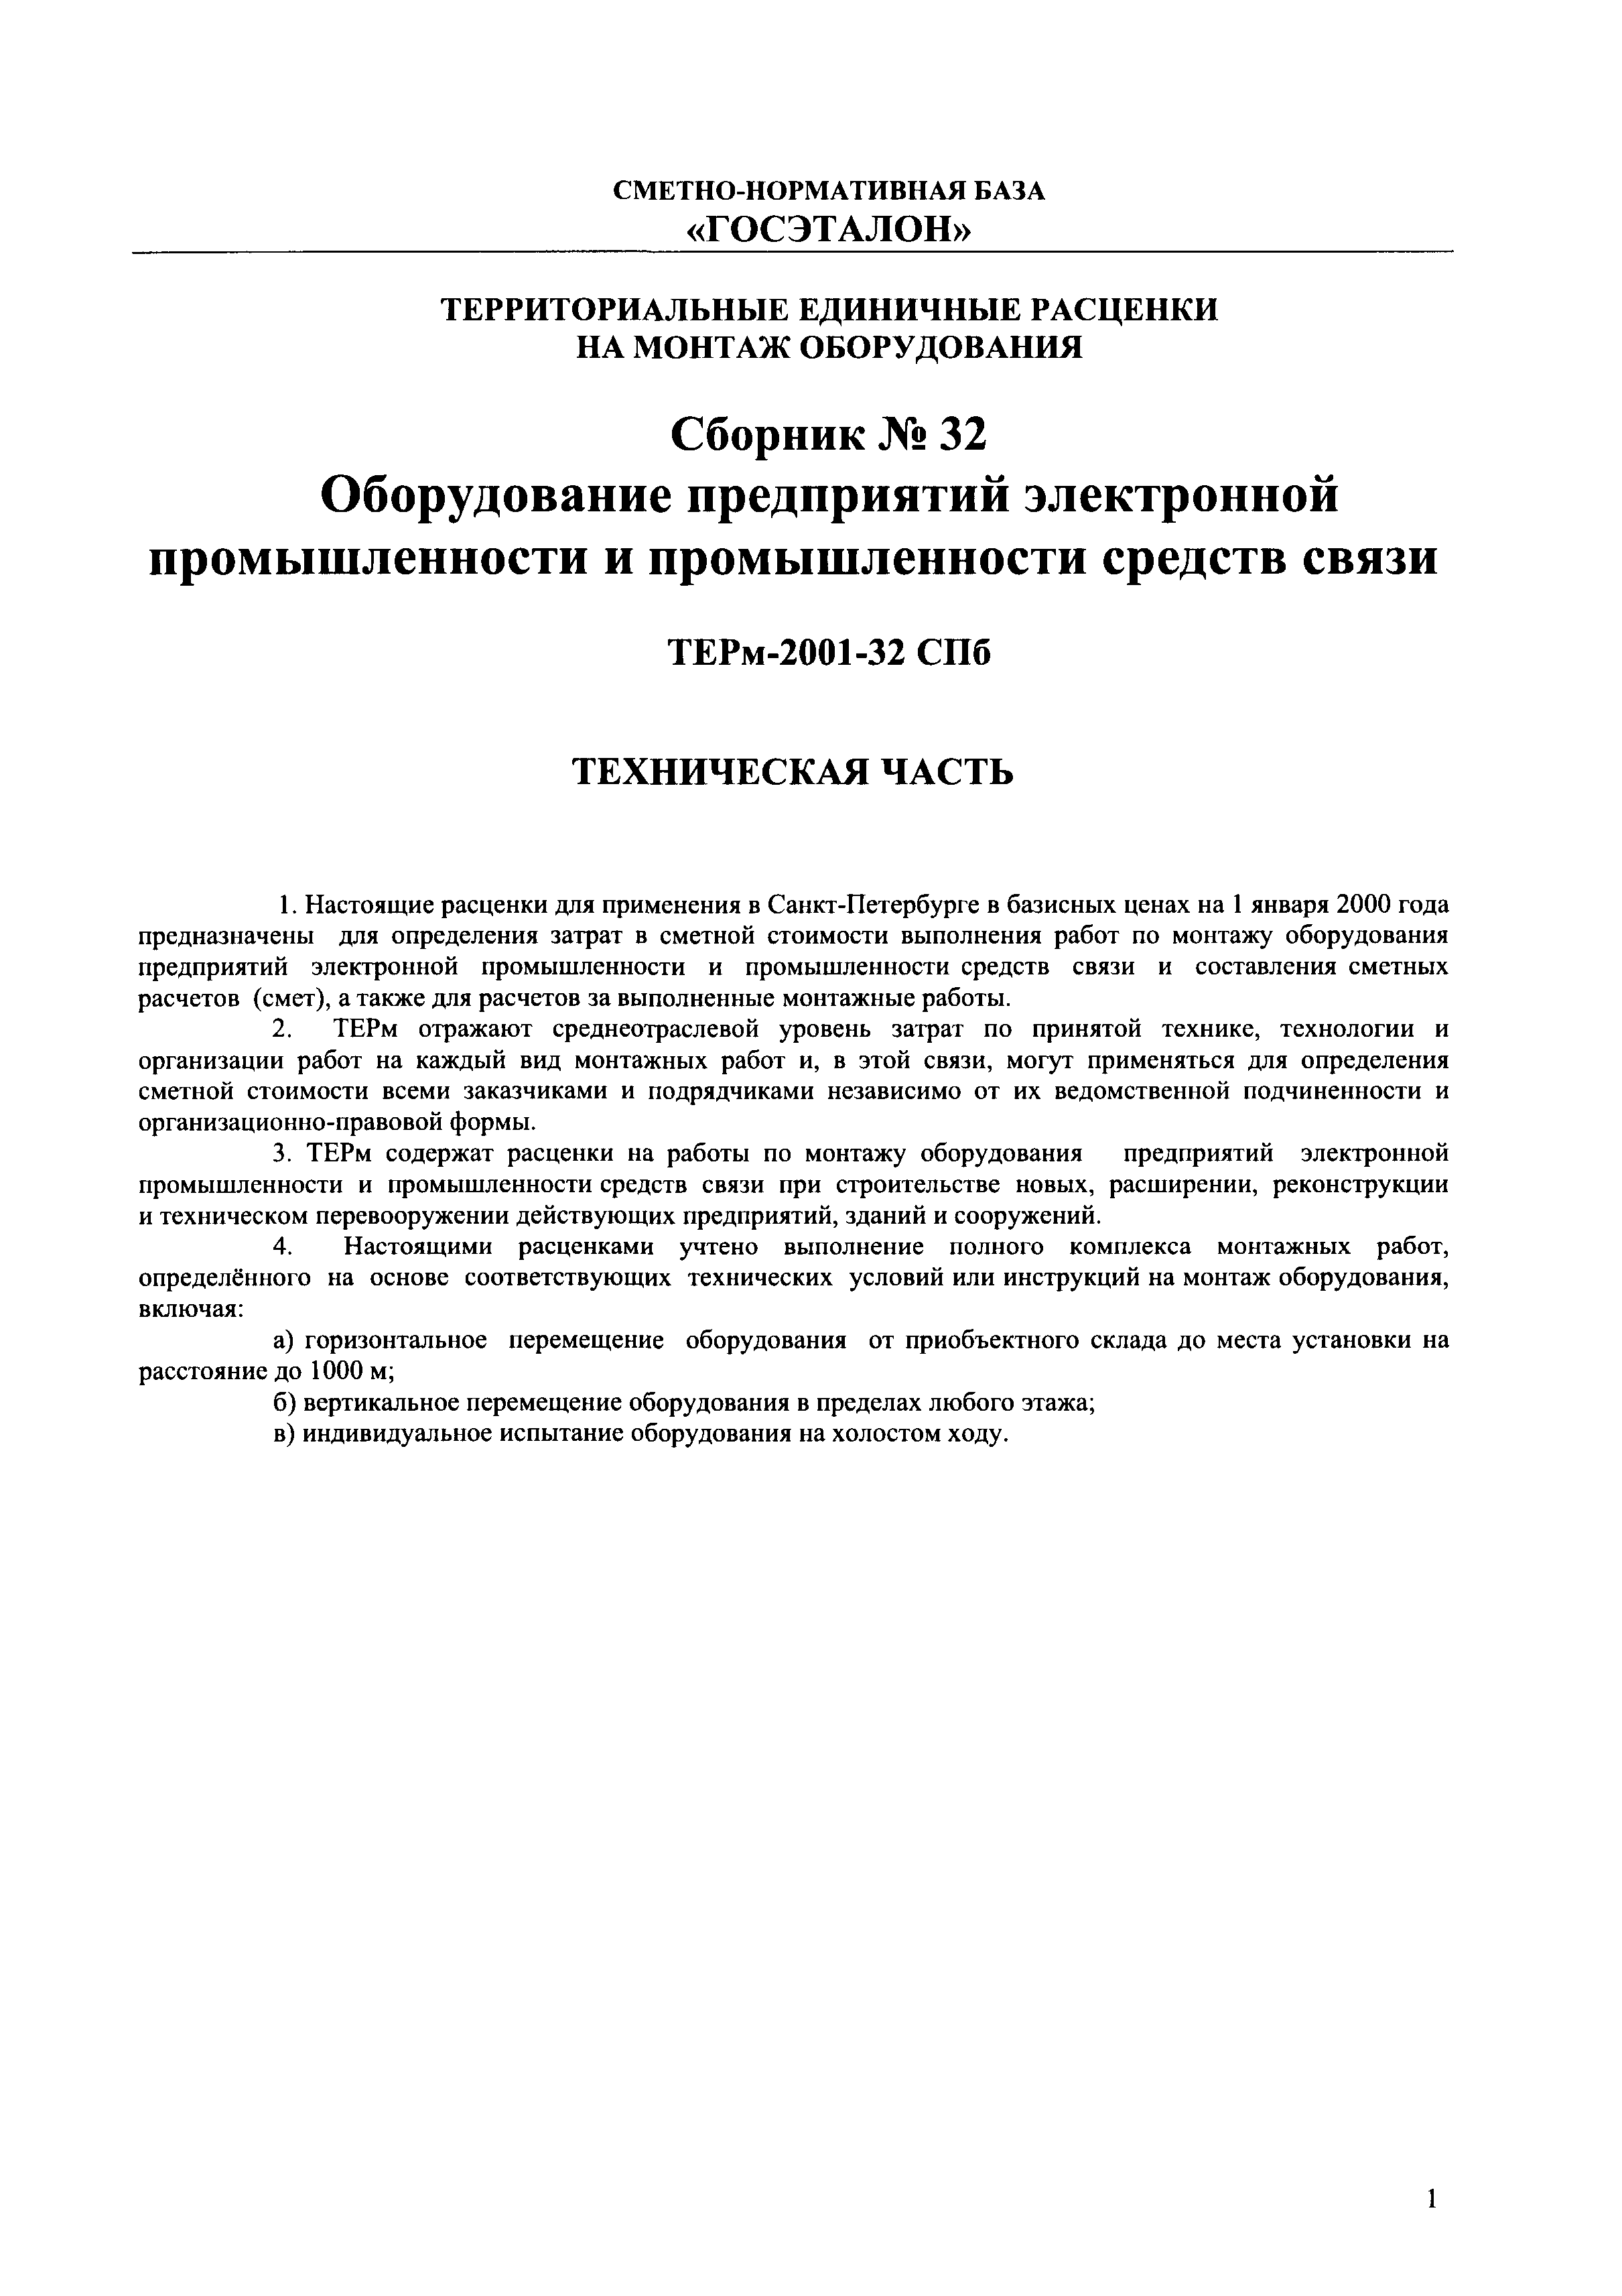 ТЕРм 2001-32 СПб